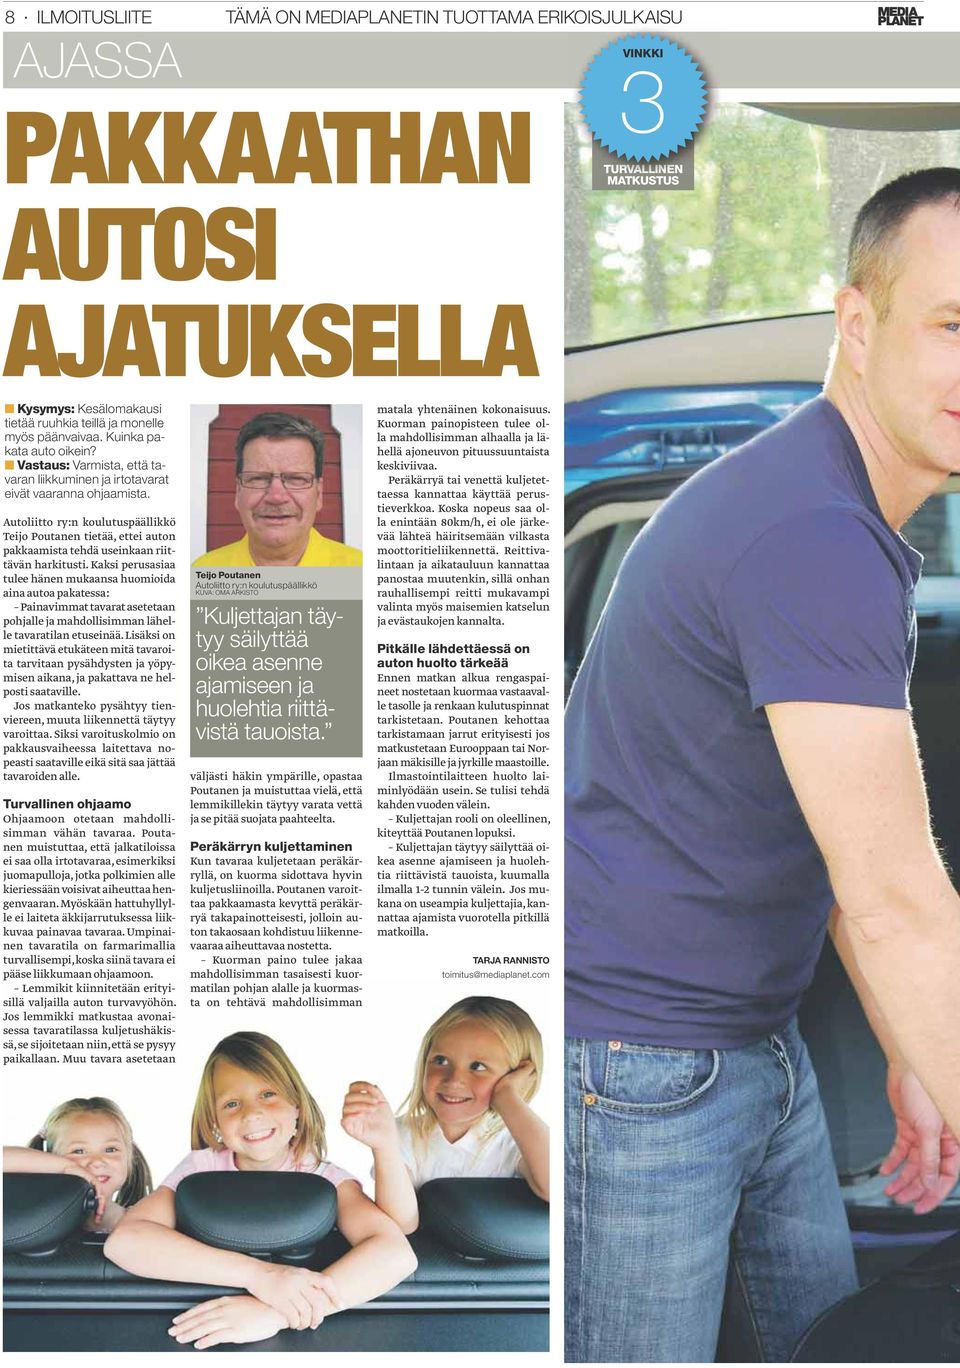 Autoliitto ry:n koulutuspäällikkö Teijo Poutanen tietää, ettei auton pakkaamista tehdä useinkaan riittävän harkitusti.